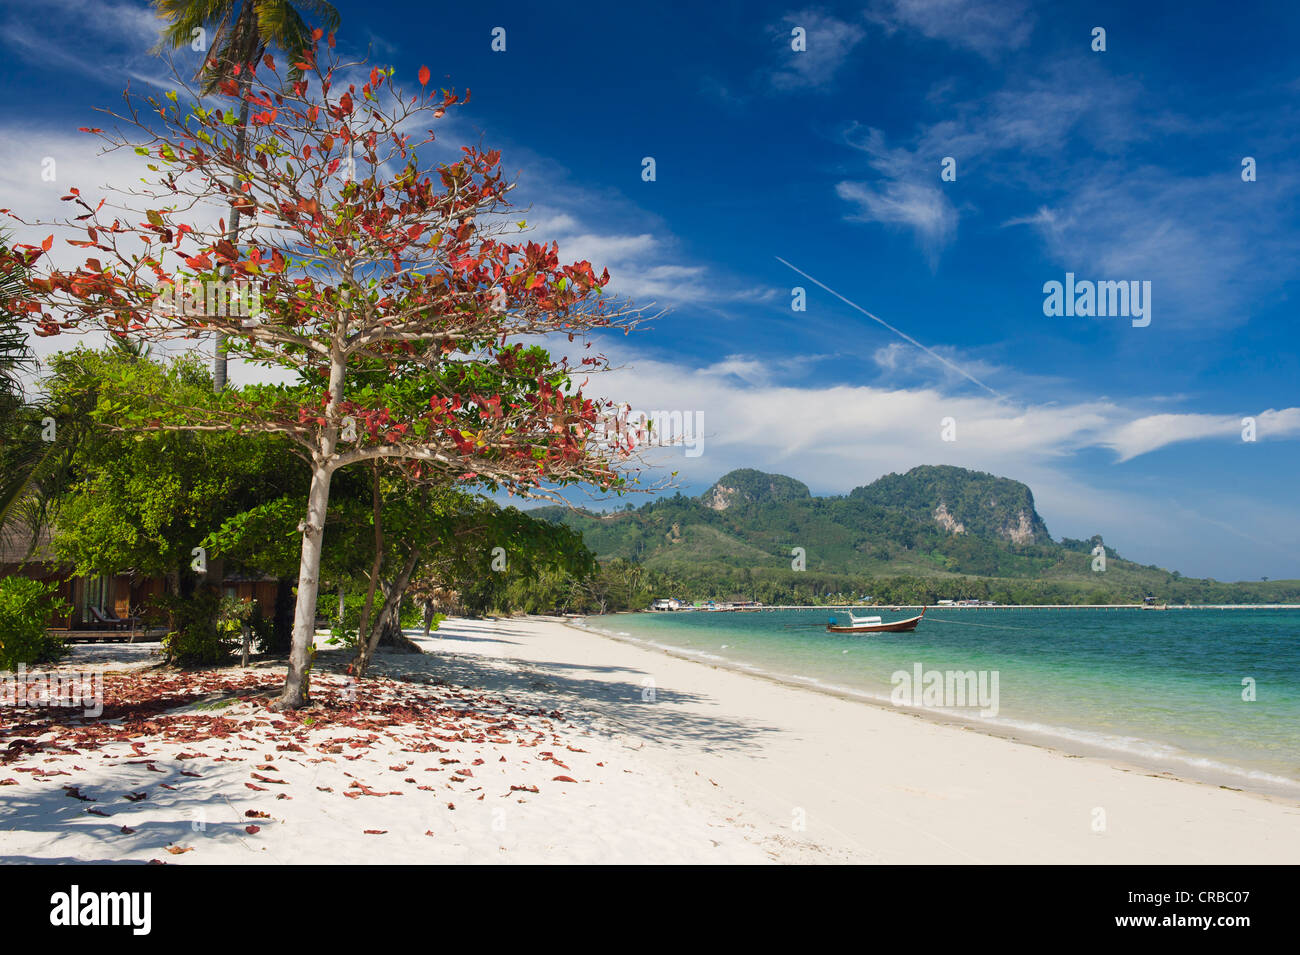 Arbre à feuilles rouge sur la plage de sable, Ko Muk ou Ko Mook island, Thaïlande, Asie du Sud-Est Banque D'Images